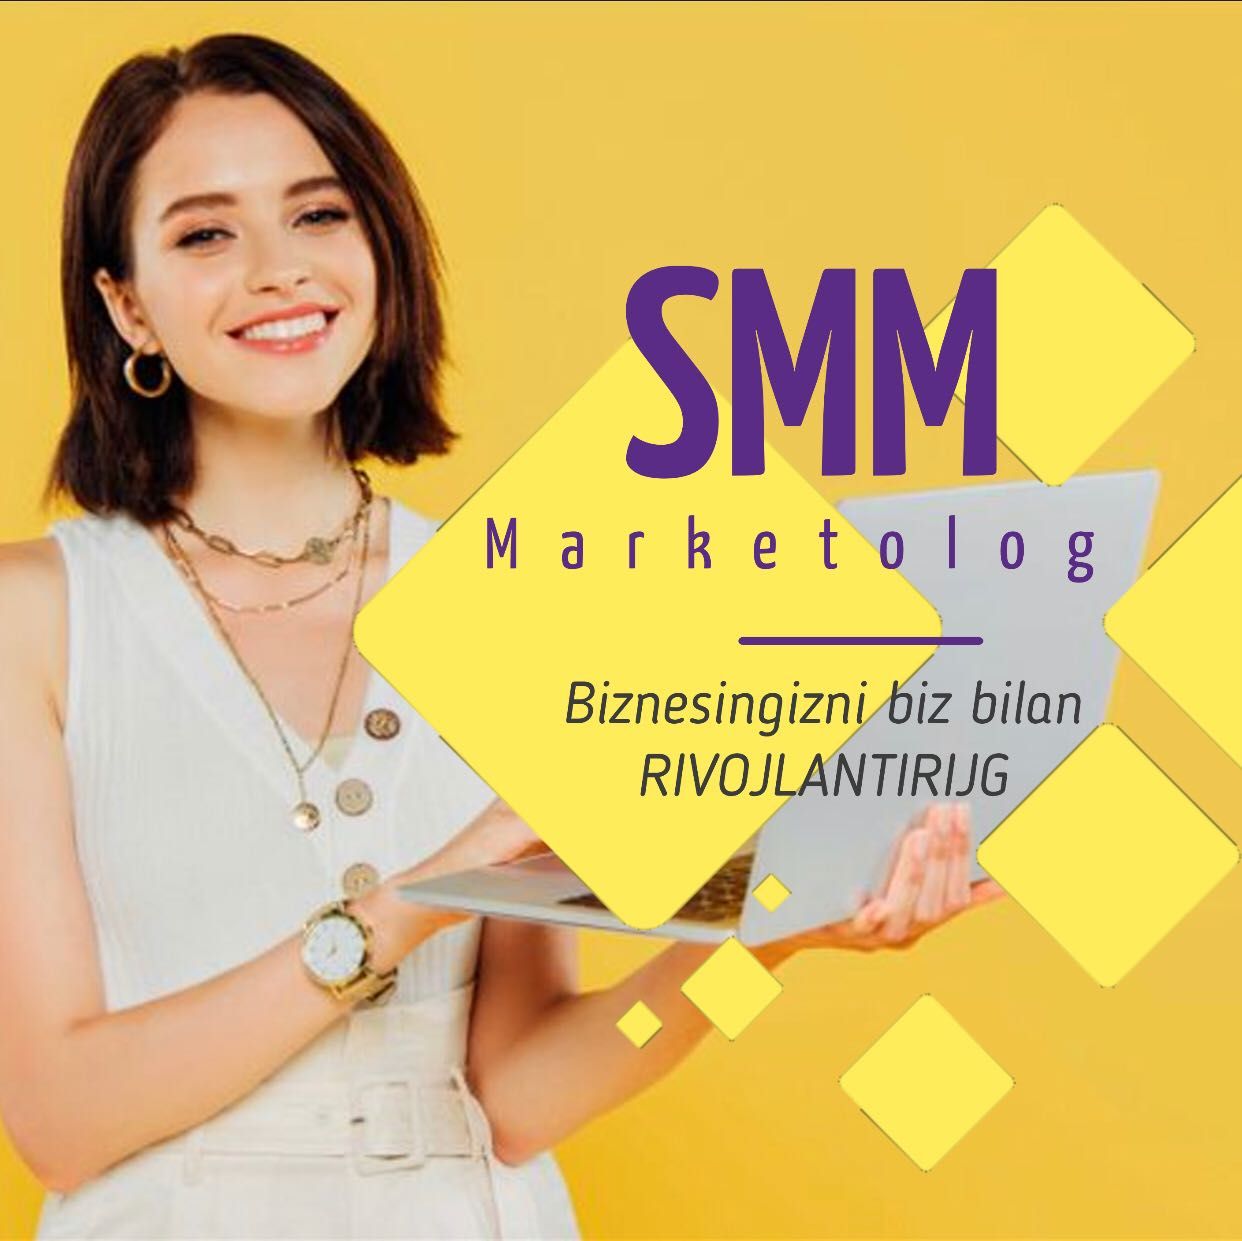 "SMM" - Social media marketing